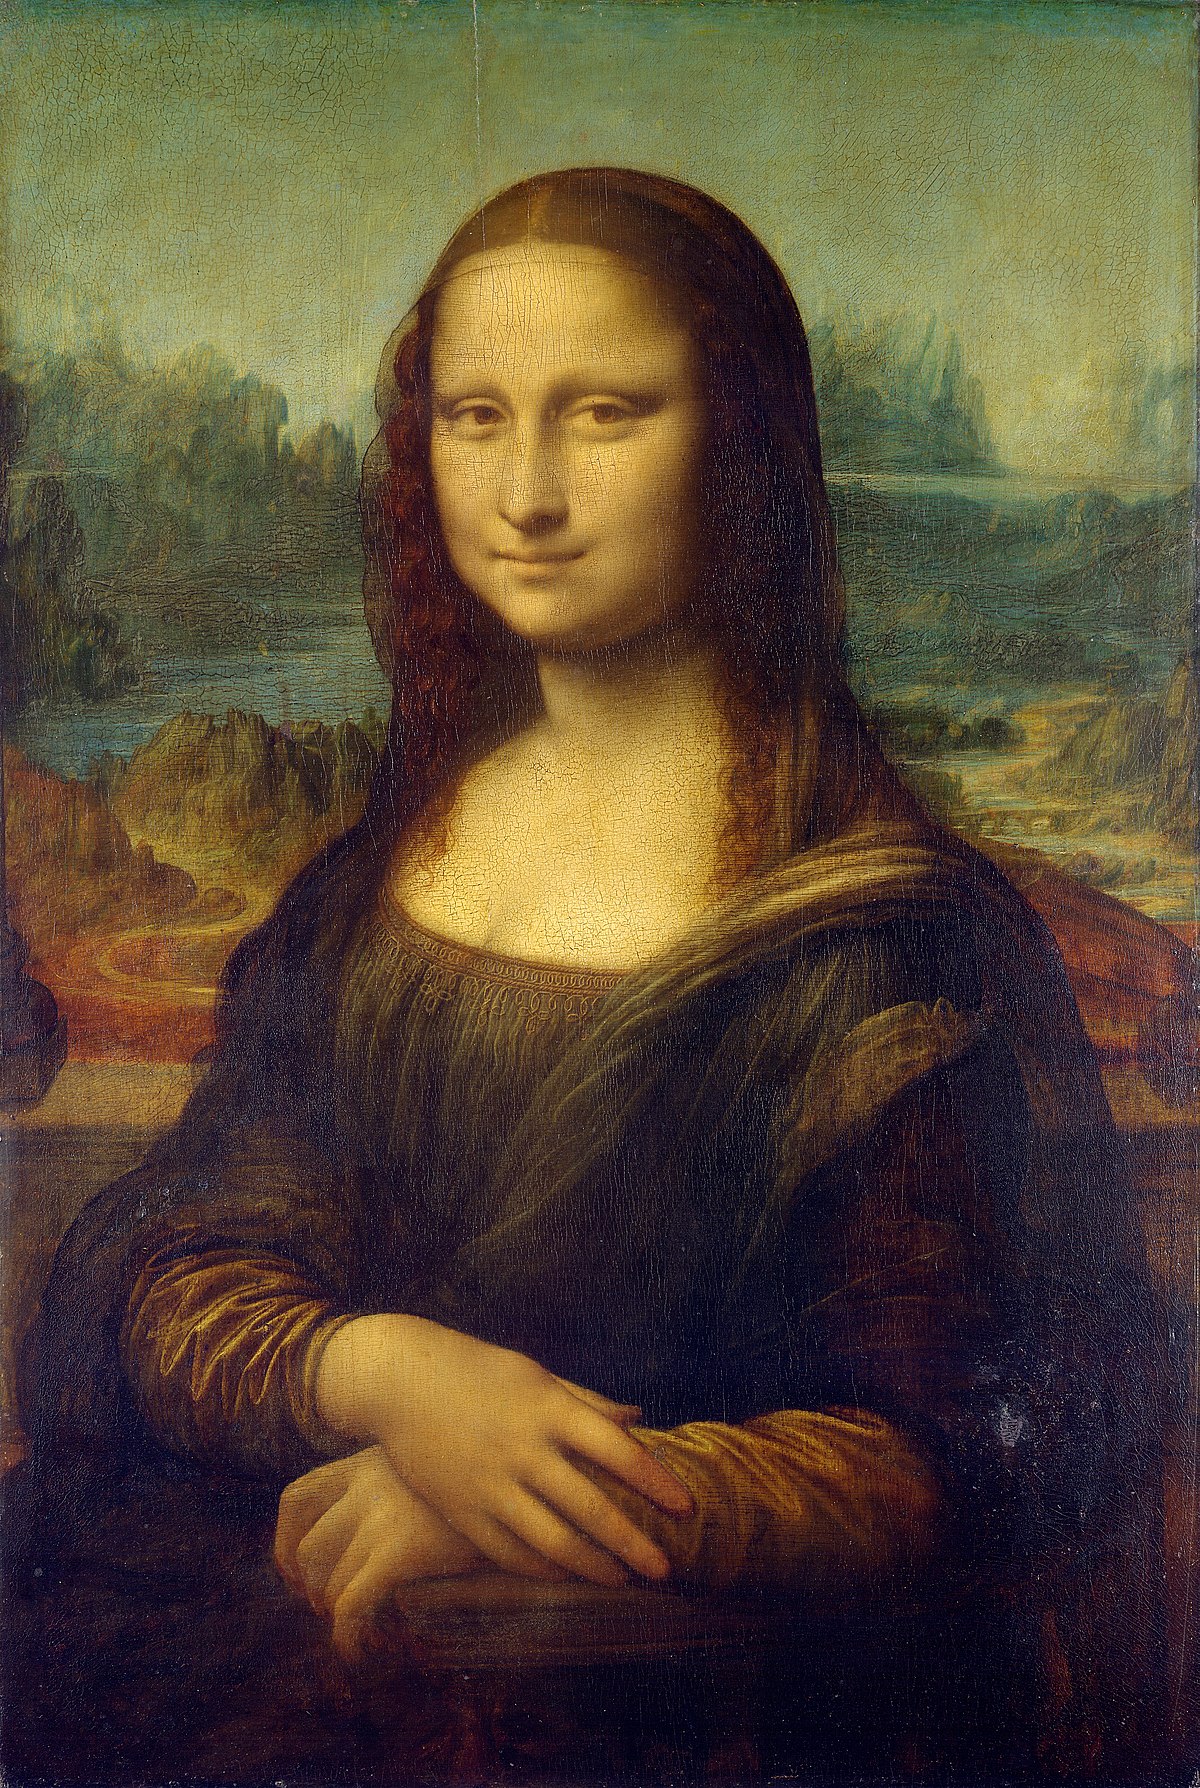 Hé lộ hình ảnh nàng Mona Lisa của thế kỷ 21, dung mạo ra sao mà khiến nhiều người sửng sốt? - Ảnh 1.